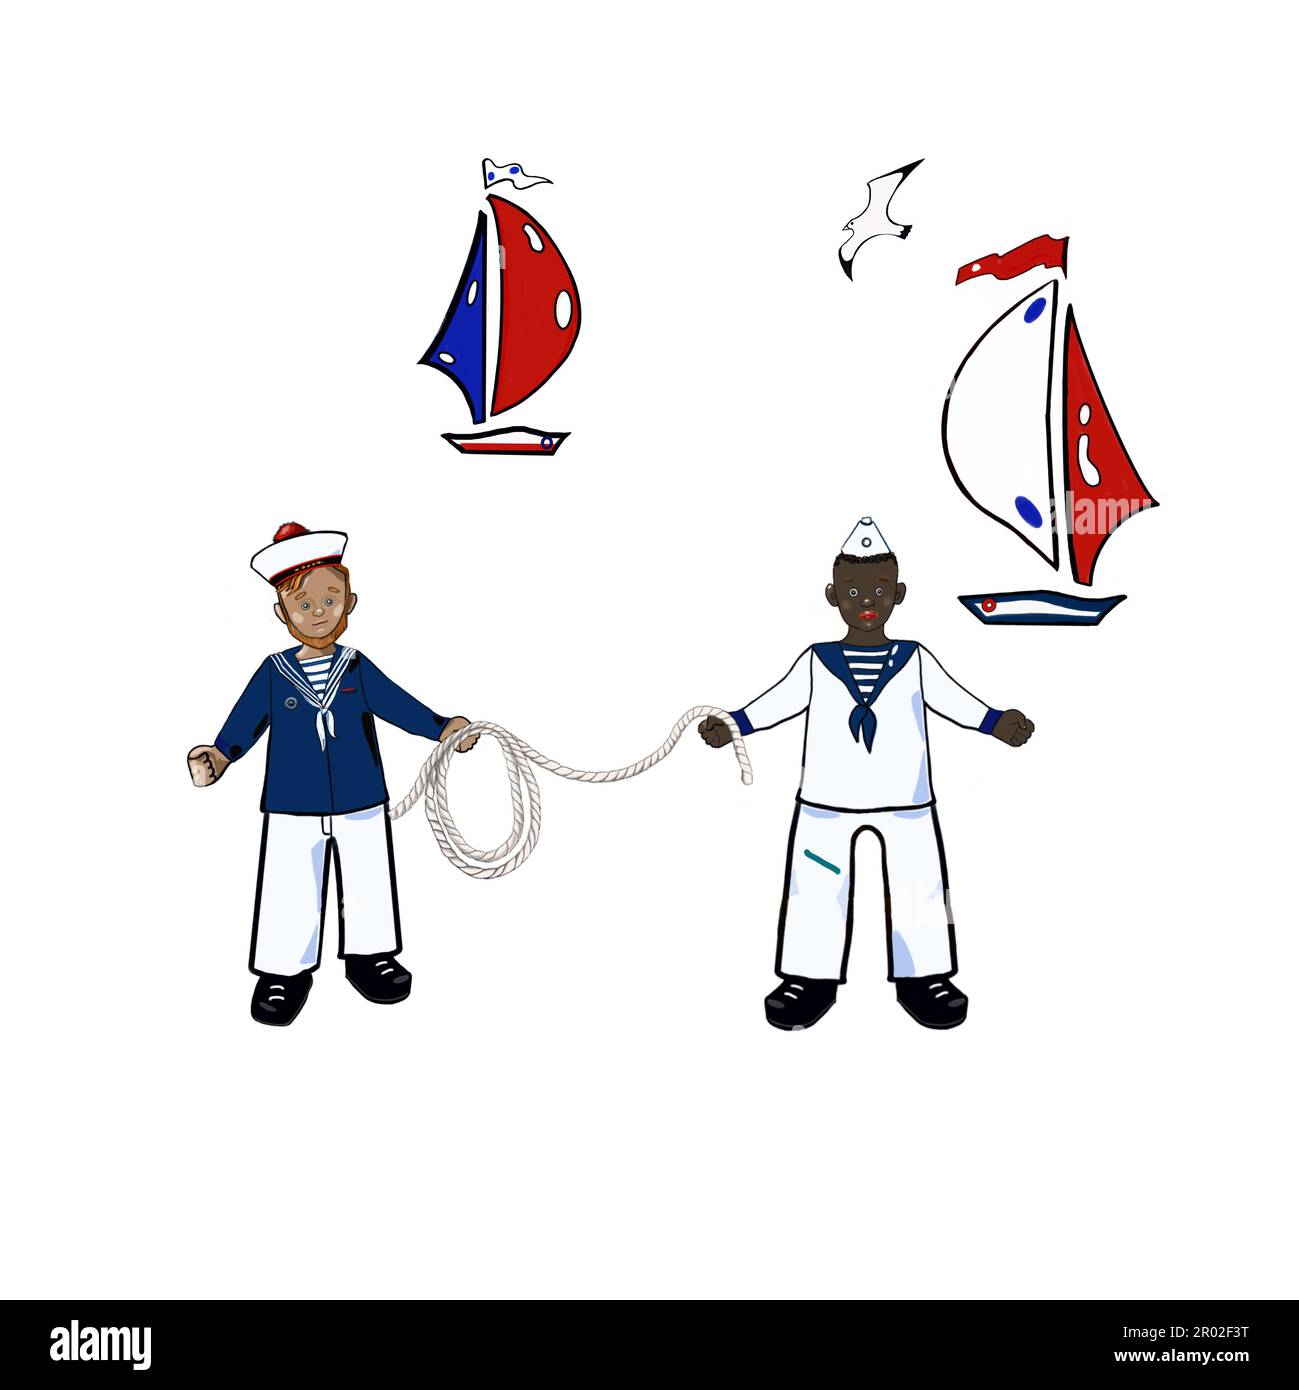 marine, set de mer, marins, yacht, mouette sur fond blanc Banque D'Images